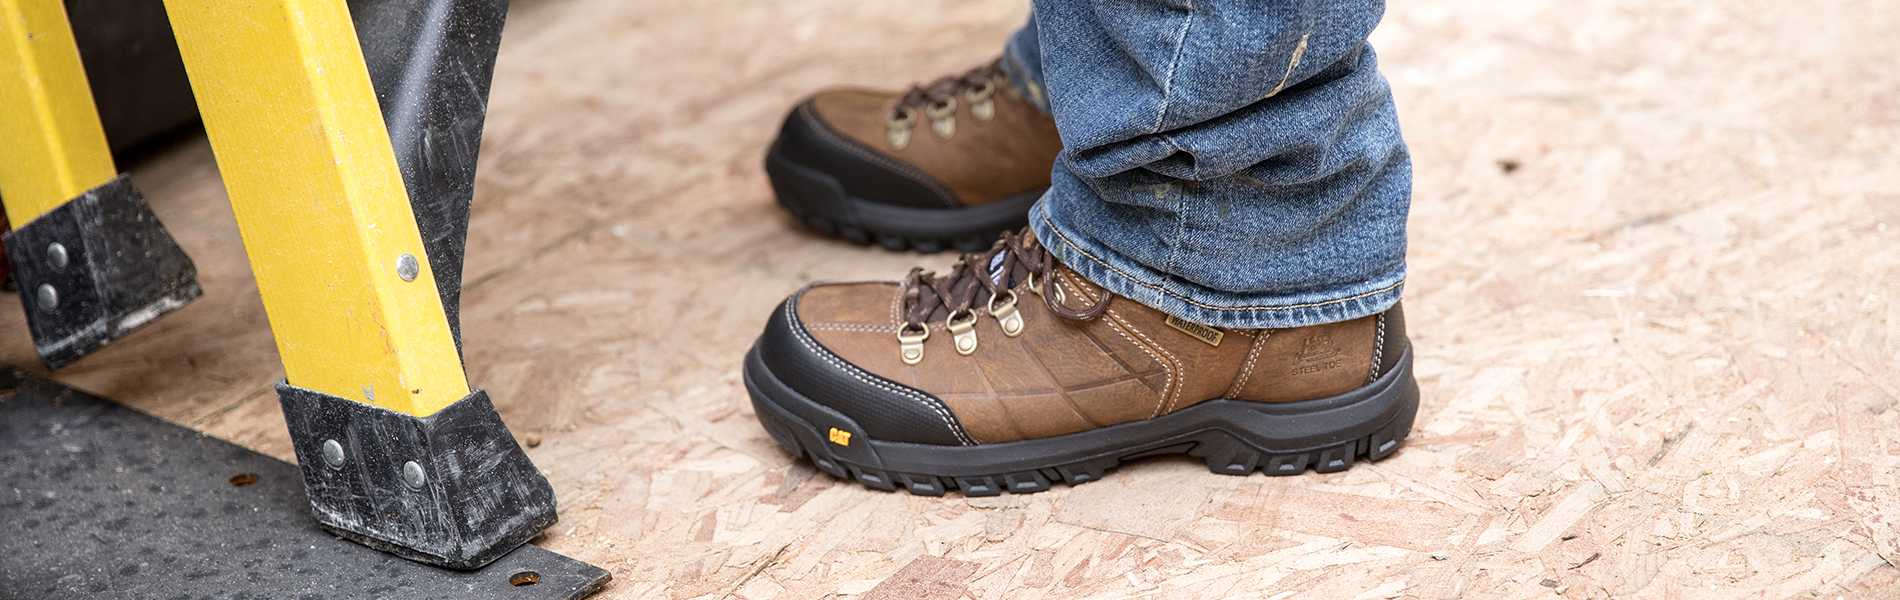 waterproof steel toe work boots